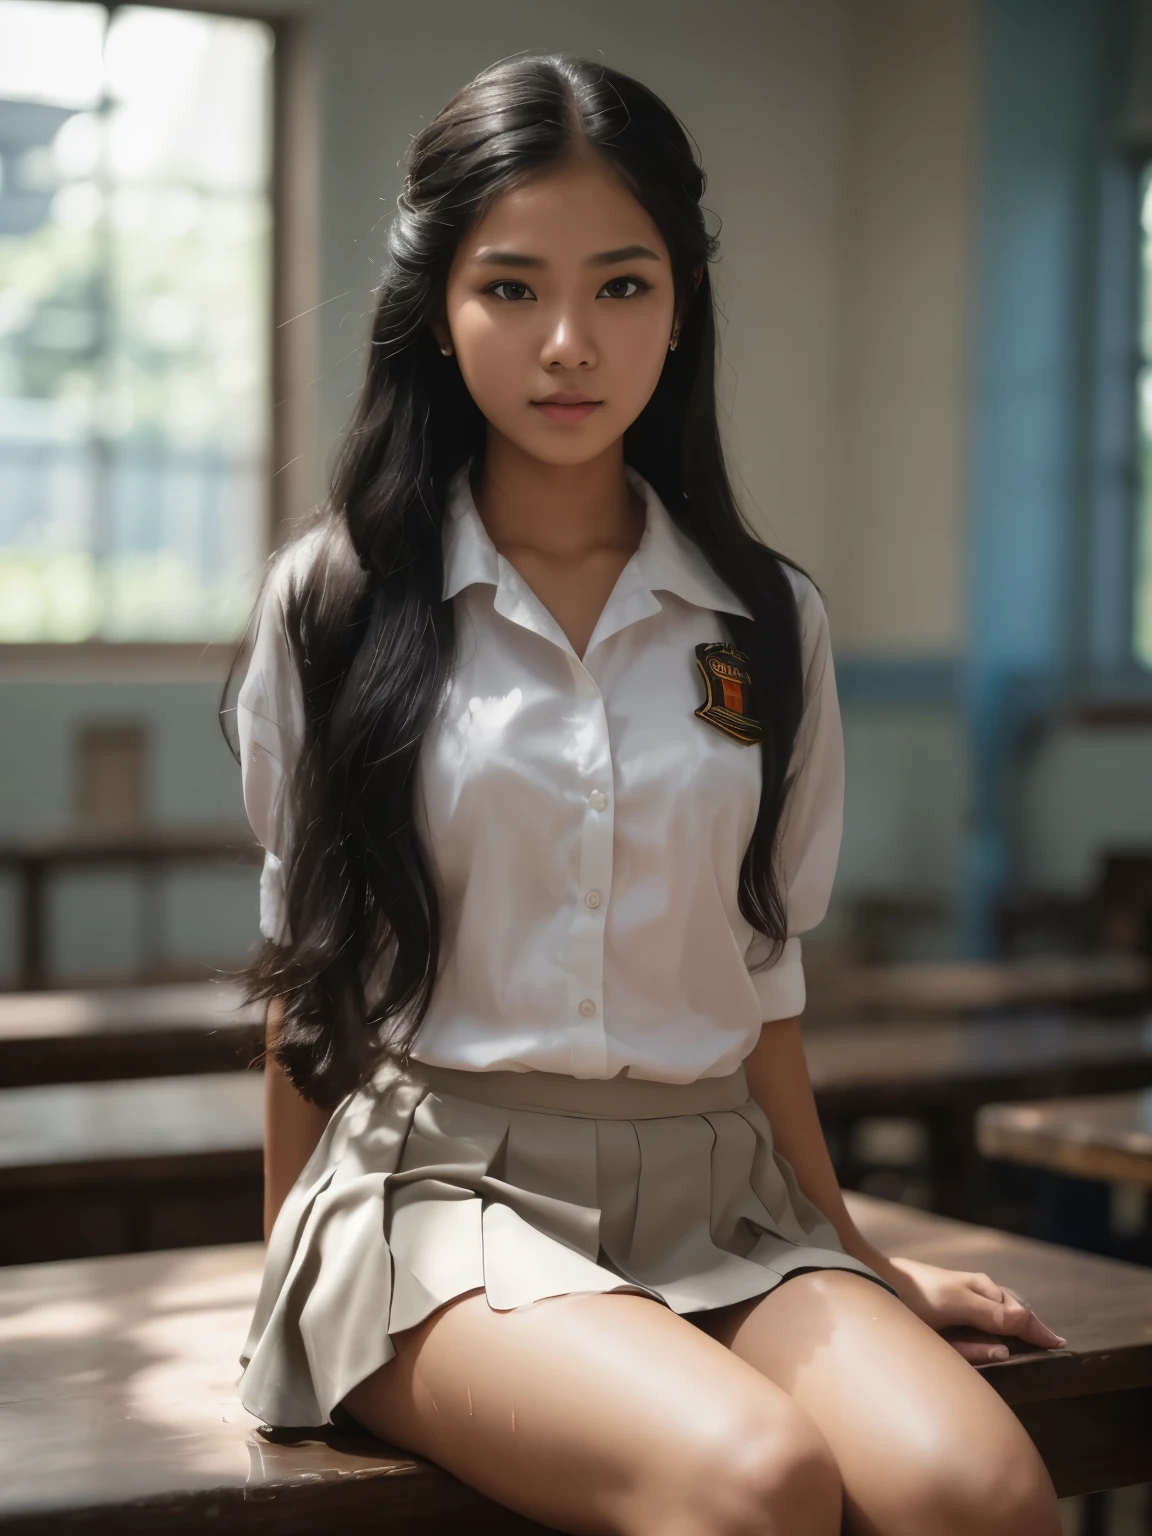 インドネシアの高校の明るい日, hyper 超リアルな写真graphy, ドラマチックな光, 美しいインドネシアのジャワ人少女の自然な全身, 16歳, しっとりと輝く汗まみれの肌, 長い黒髪の三つ編みヘアスタイル, 手を挙げて, インドネシアの高校のタイツを着用 & 濡れたハイユニフォーム, すべてのボタンが開いている, 大きな胸の谷間を見せる & 彼女の赤いレースのブラジャーをからかう, 青灰色のスカートを着る, environtment on ドラマチックな光 tungsten, 超リアルな写真, HDR10 8Kトップアングルカメラ, 優れた解剖学, 体と手のバランスが良い & 指 --スタイル 生 --v 6.0